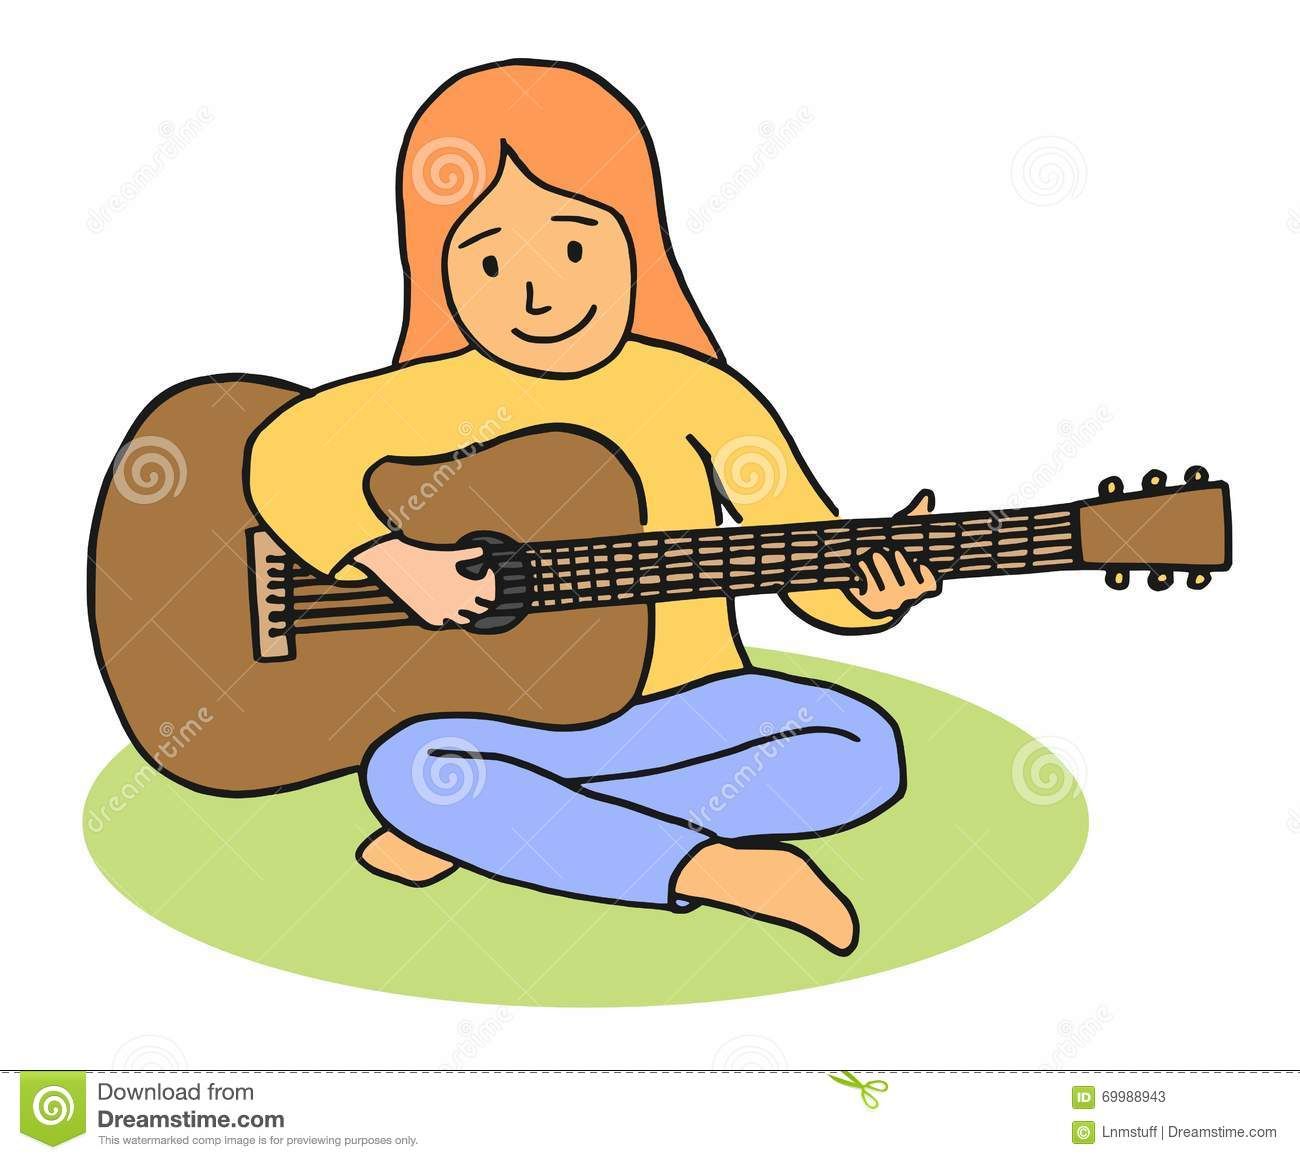 Cartoon girl playing guitar Stock Photos